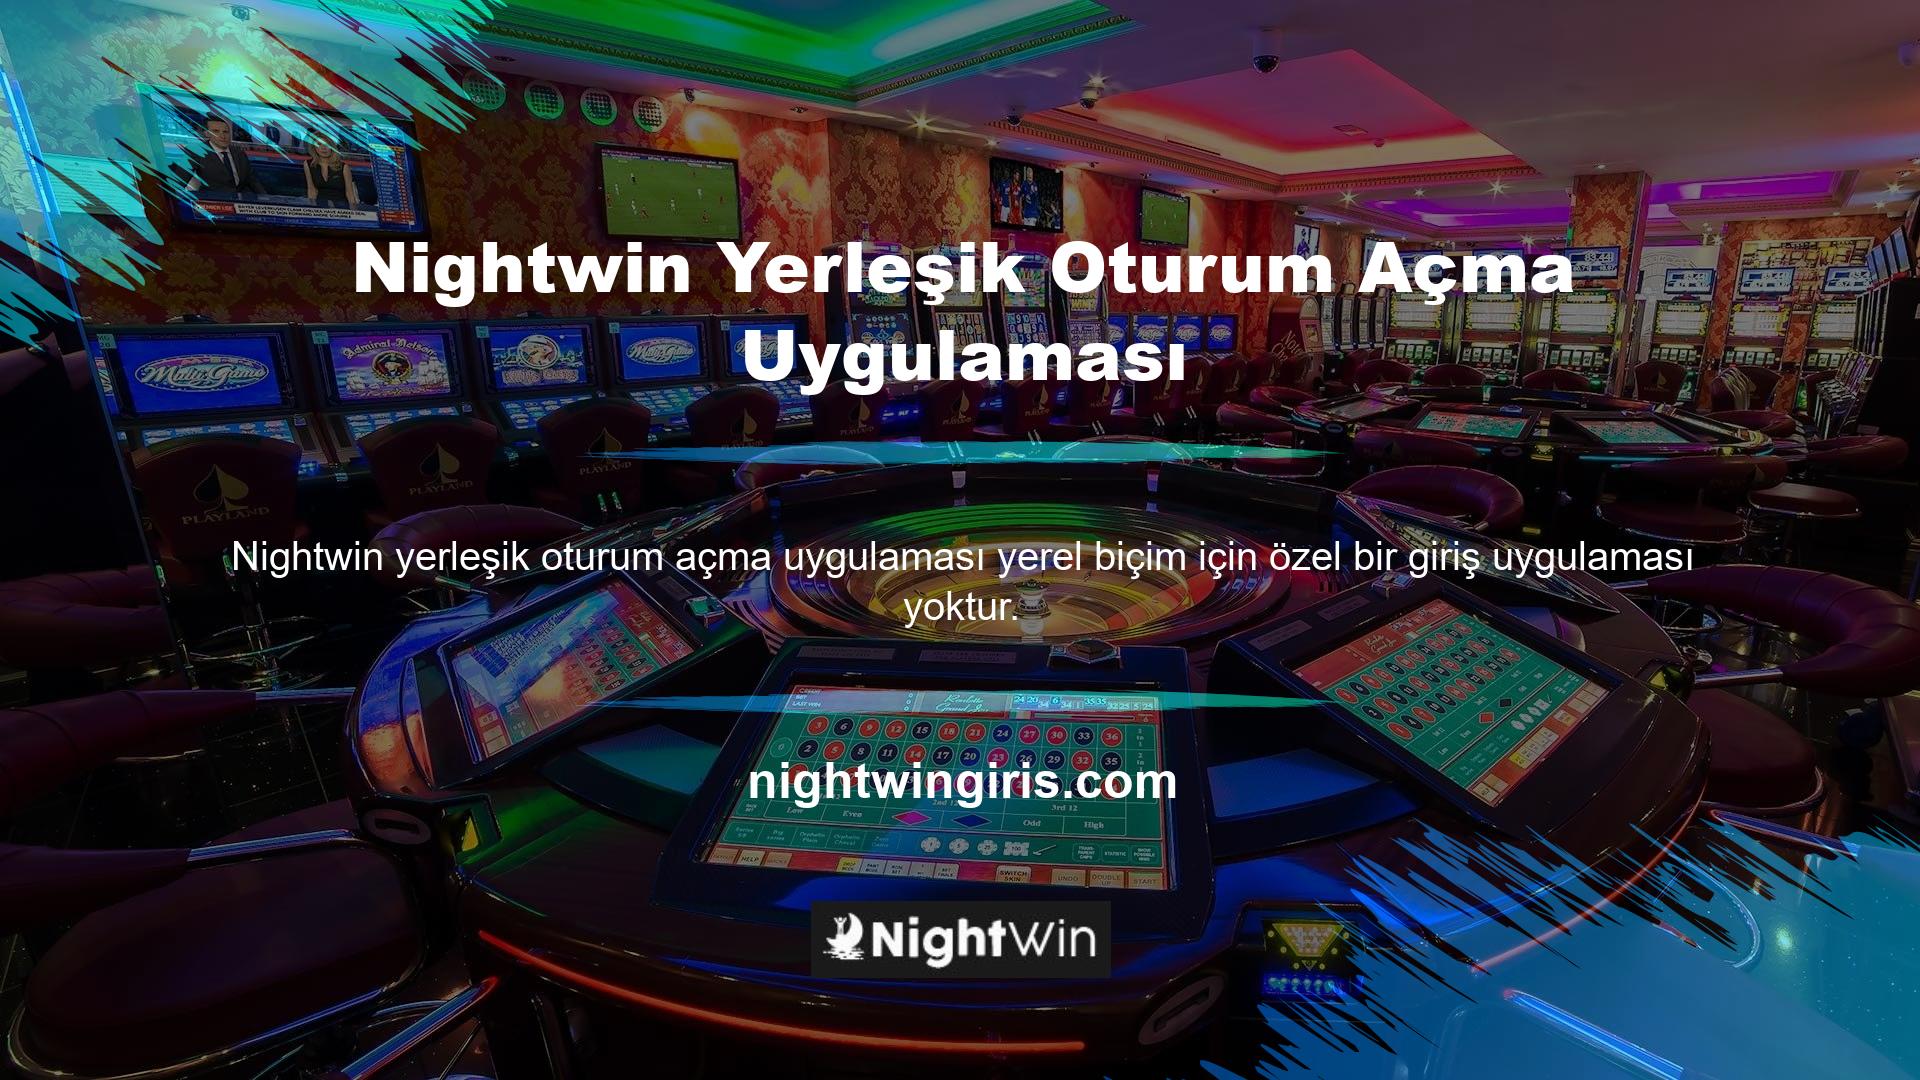 Bilmeniz gereken tek şey, Nightwin yerleşik olan geçerli oturum açma uygulaması adresidir